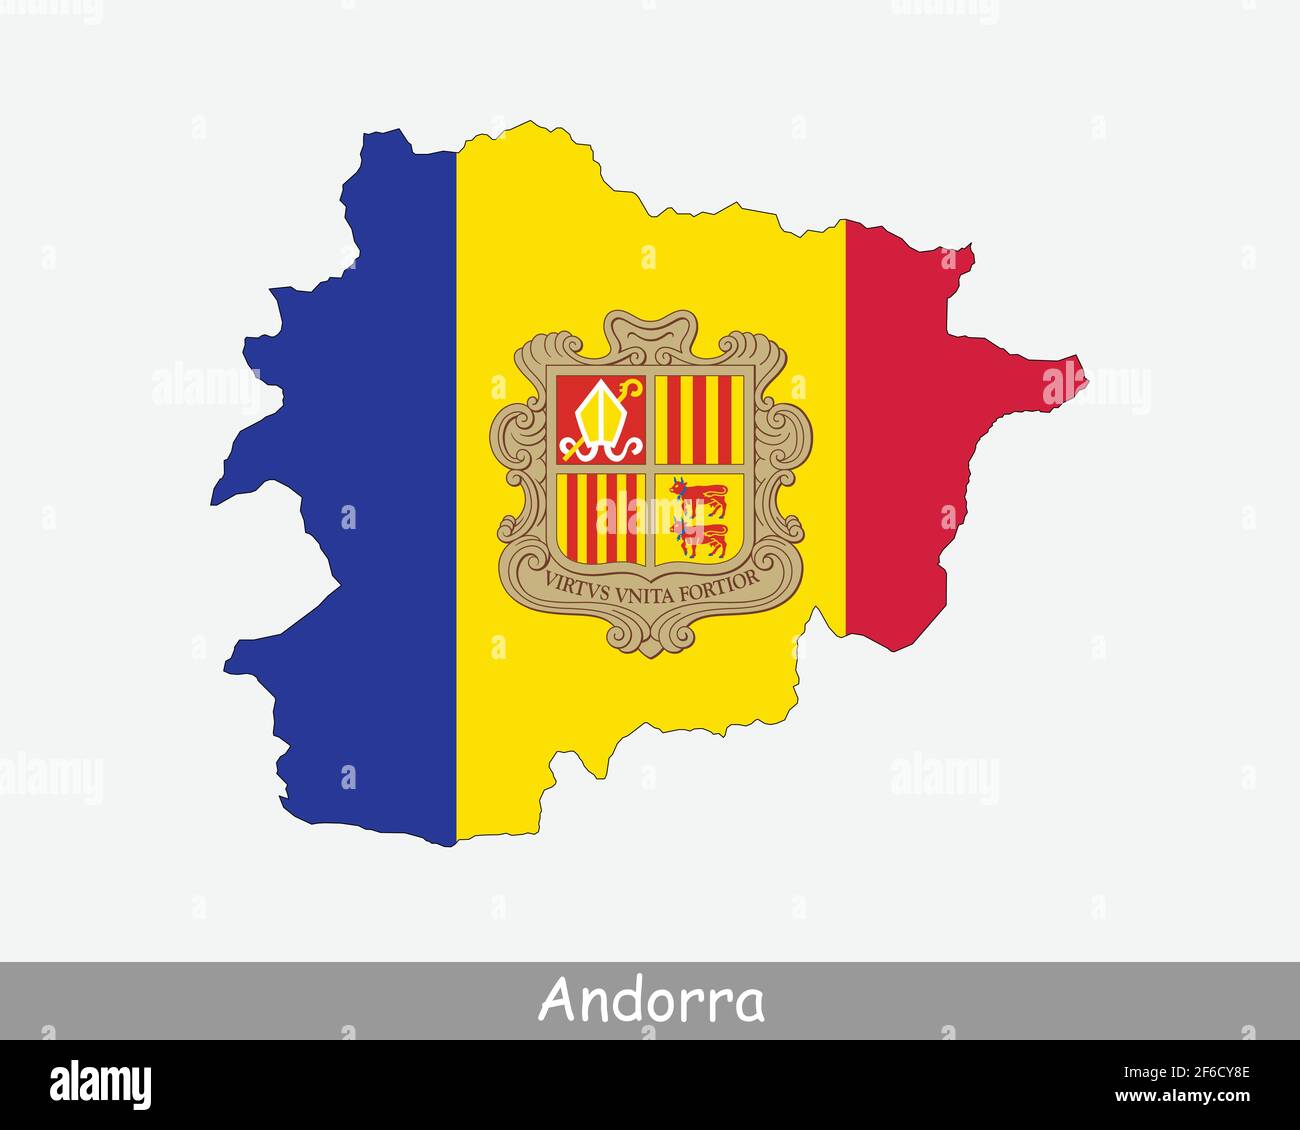 Andorra Karte Flagge. Karte von Andorra mit der Nationalflagge von Andorra isoliert auf weißem Hintergrund. Vektorgrafik. Stock Vektor